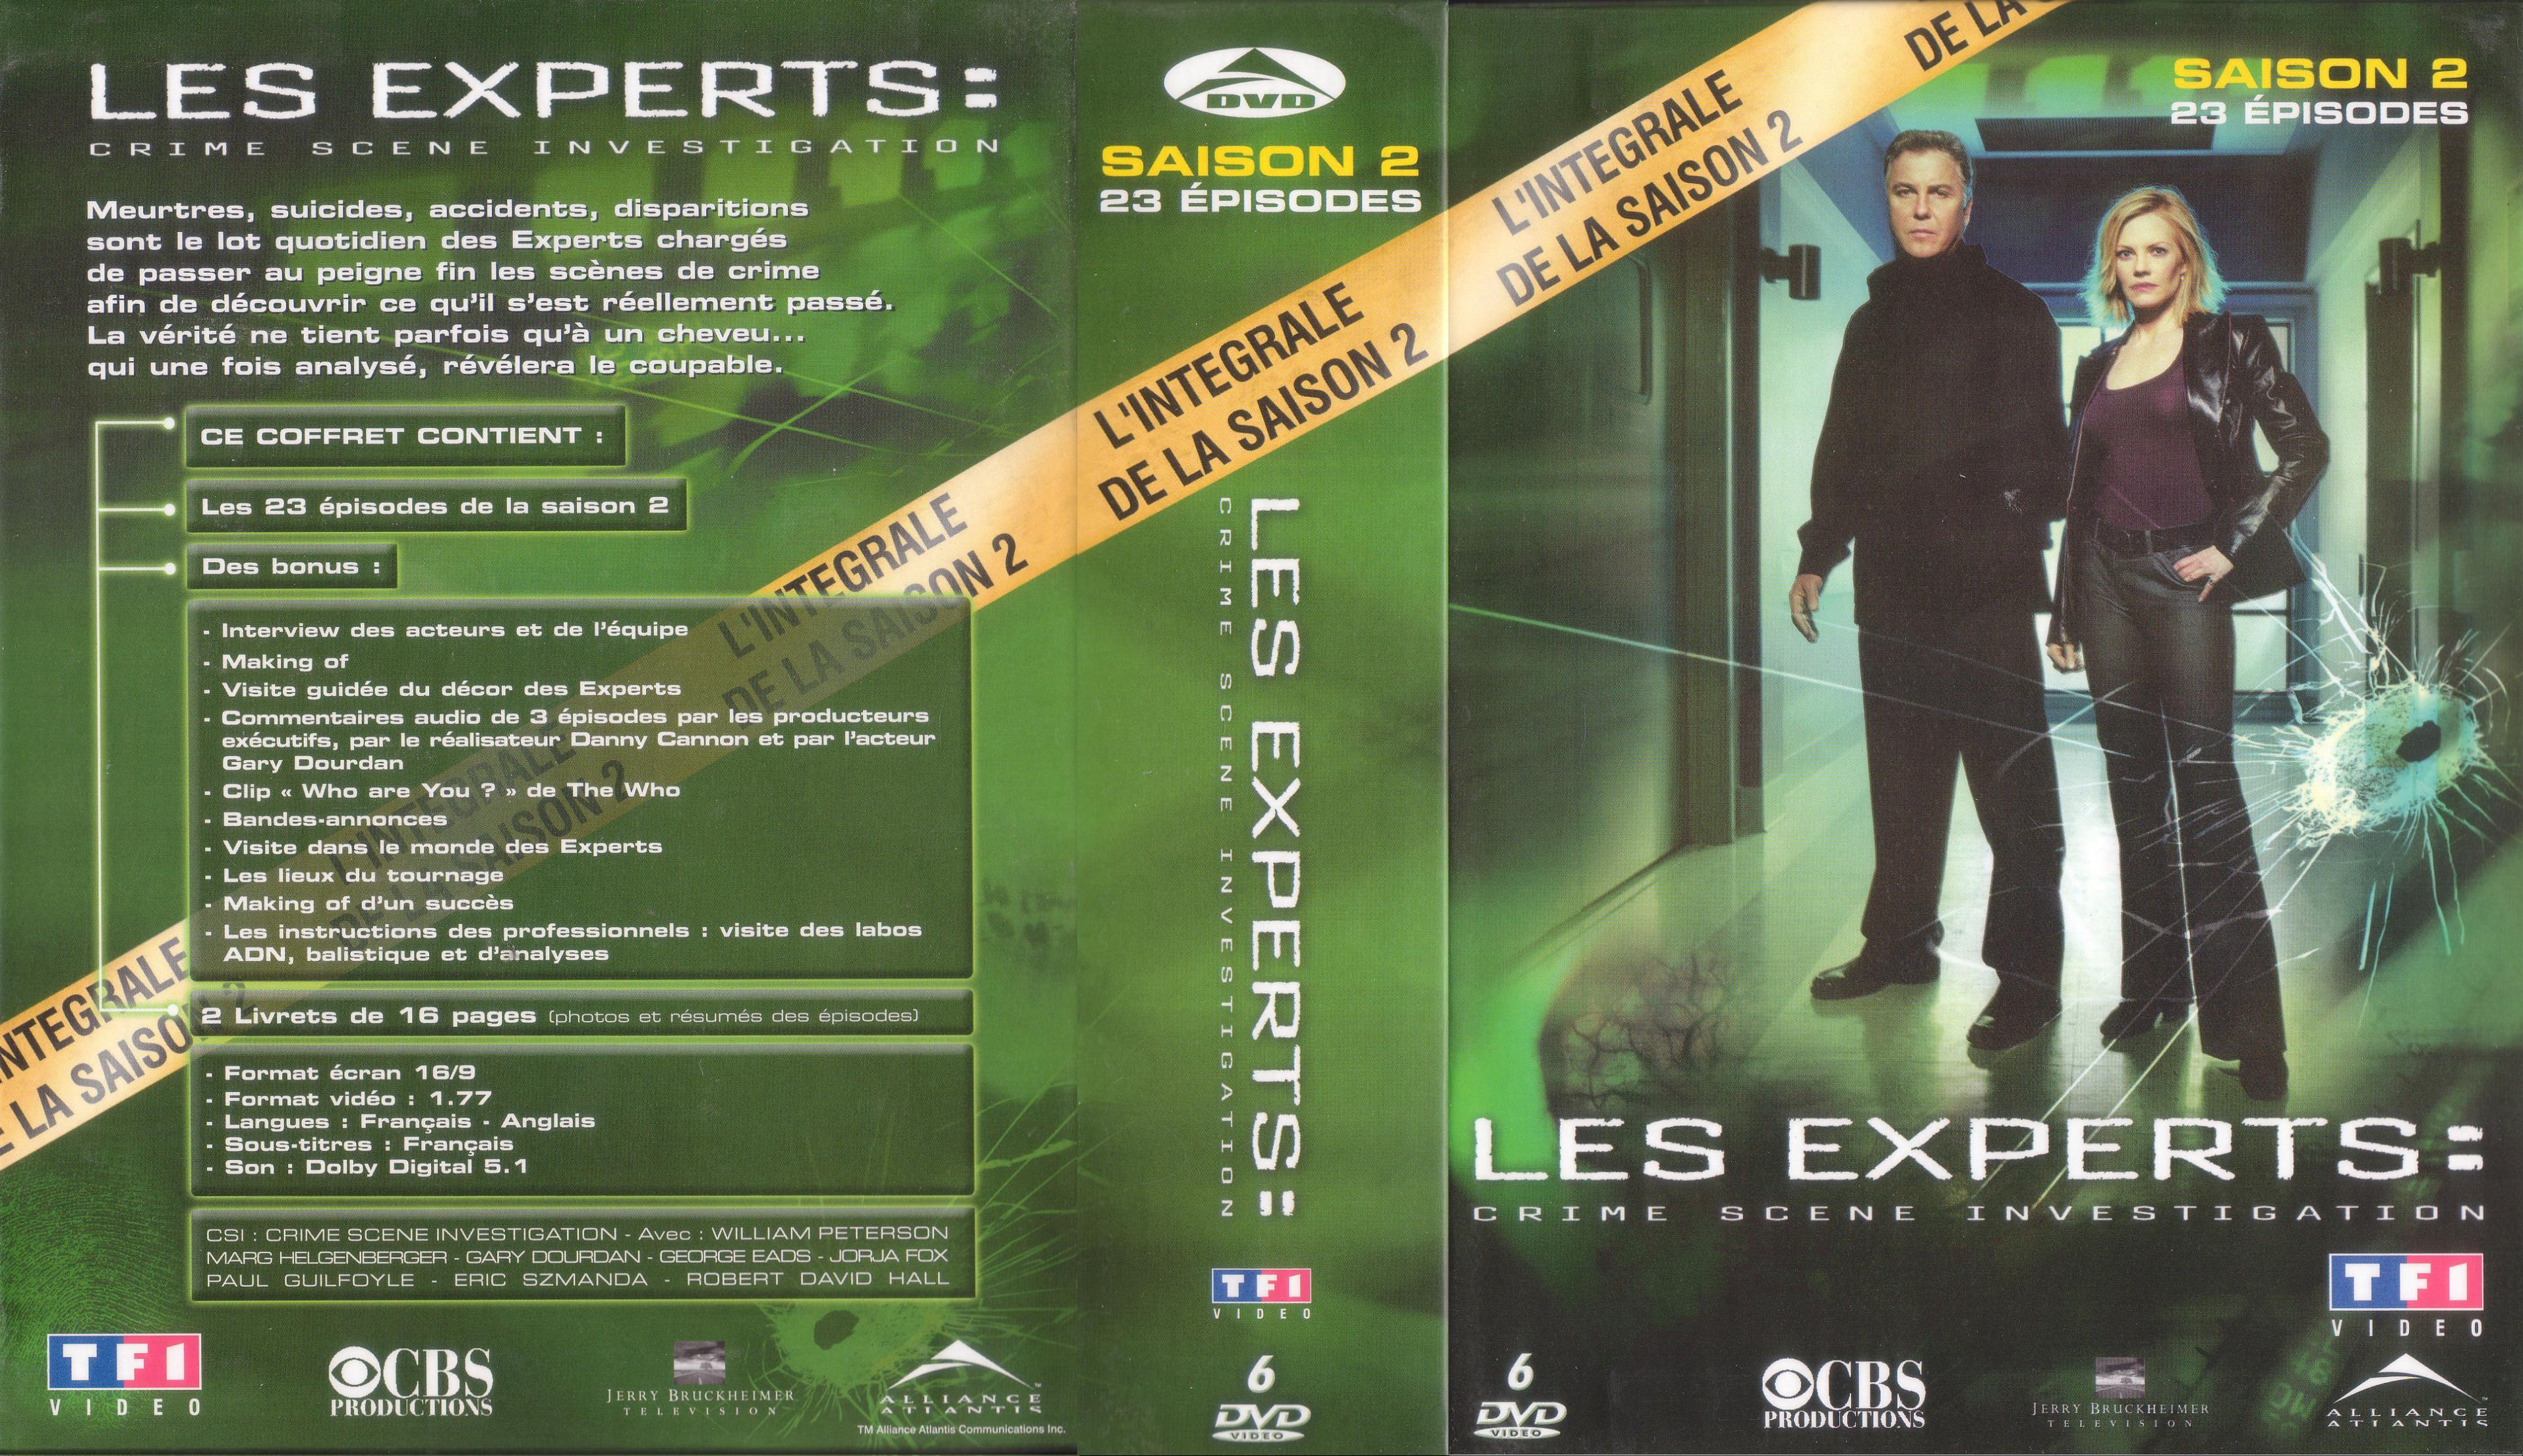 Jaquette DVD Les experts saison 2 COFFRET